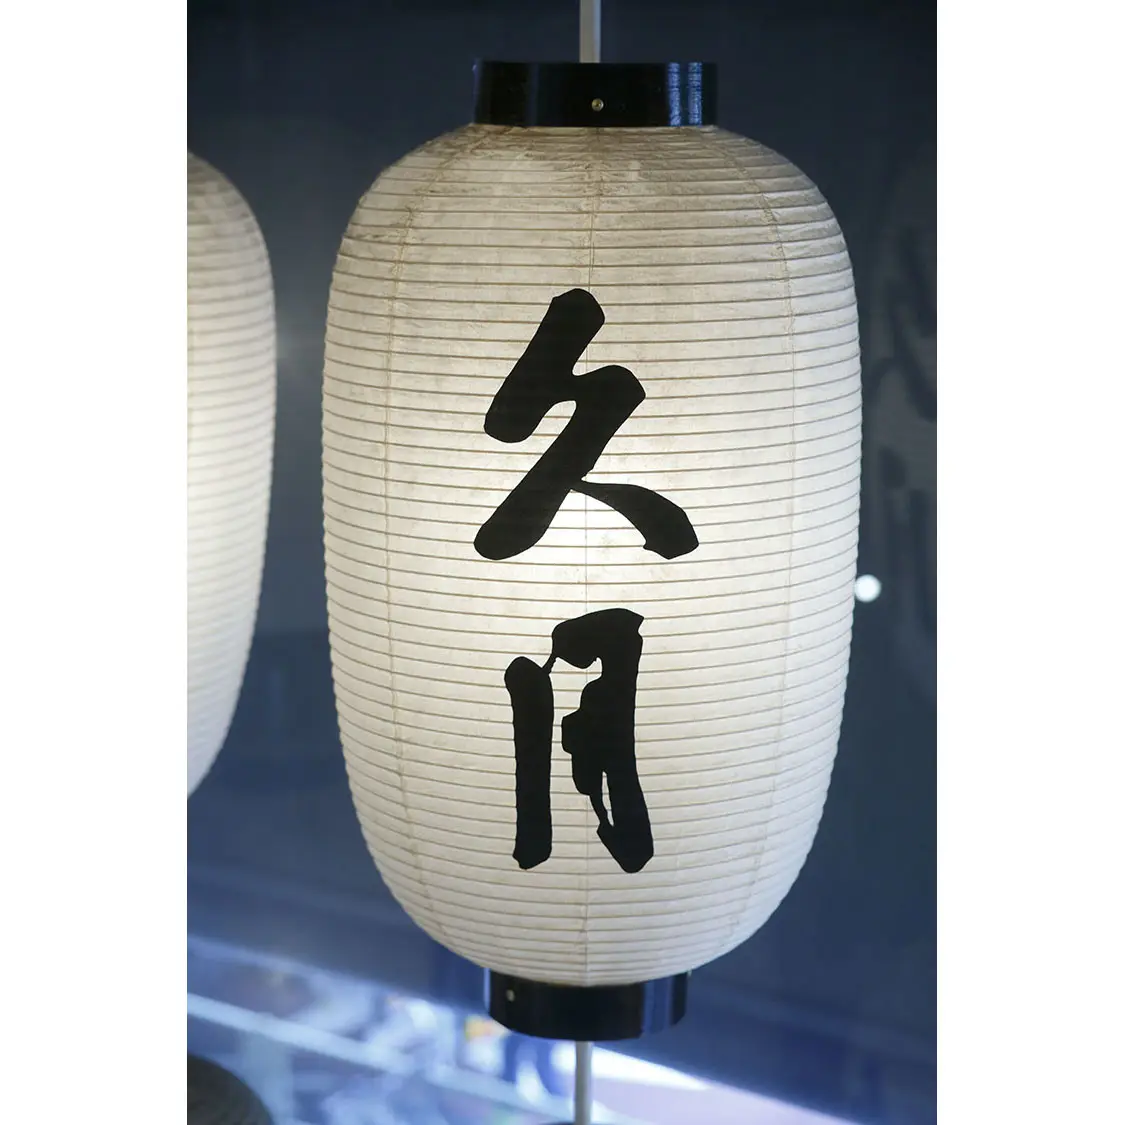 Esnek yapı japon beyaz kağıt fener olarak bir veya hatıra